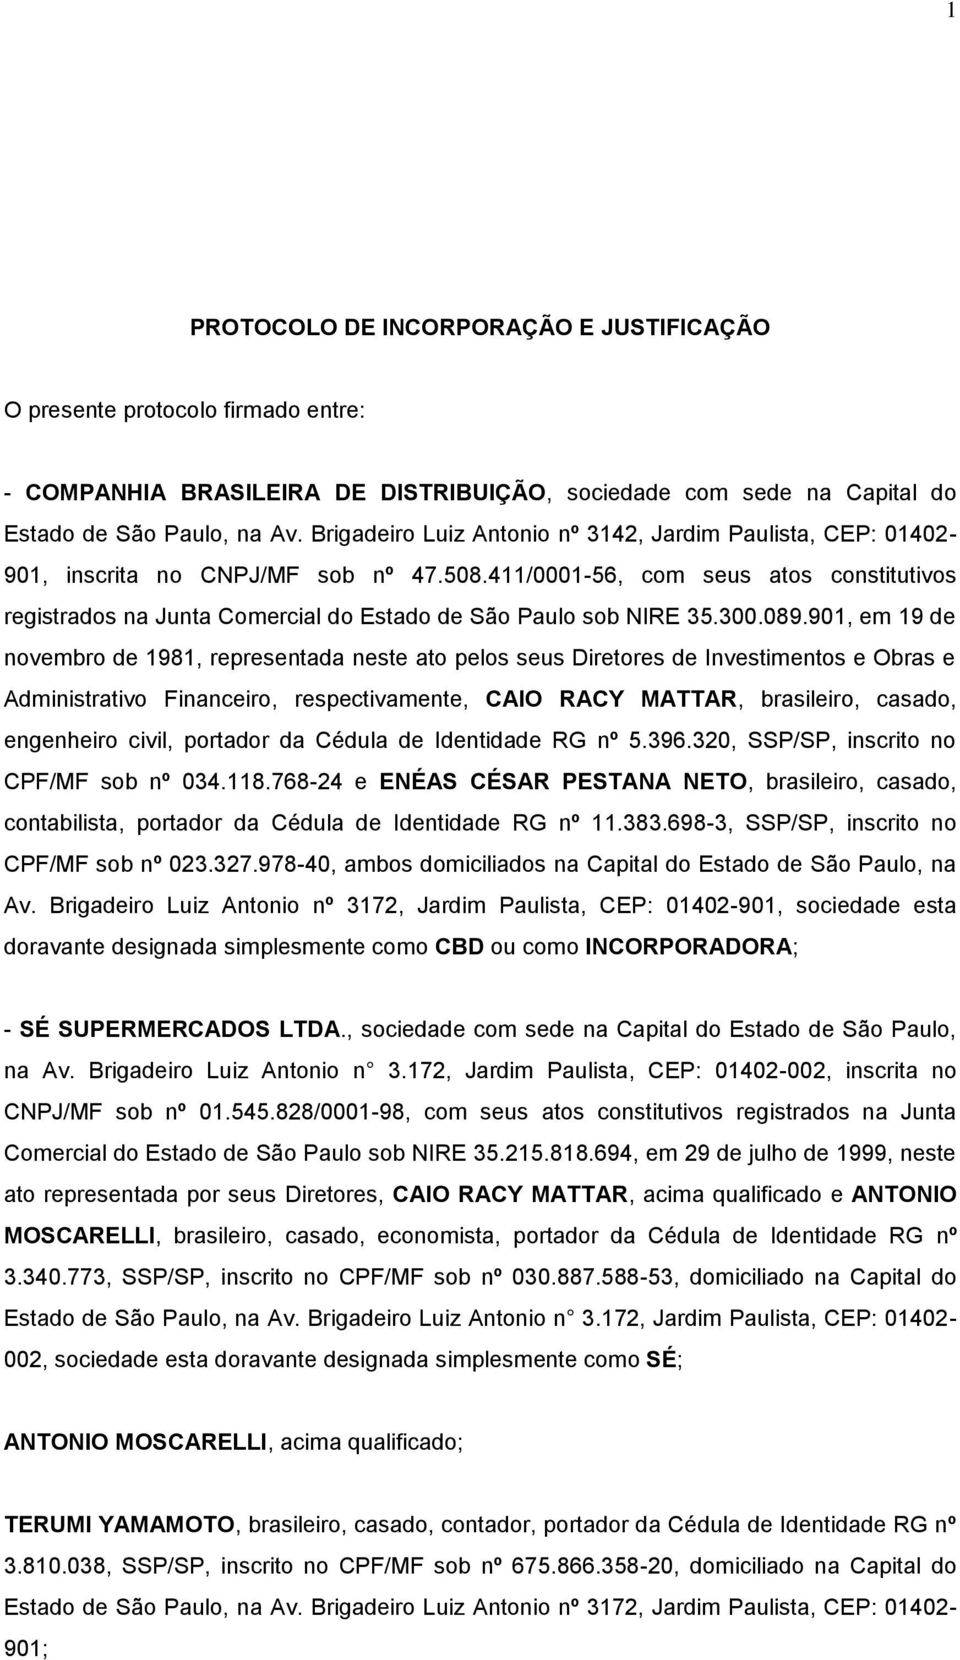 411/0001-56, com seus atos constitutivos registrados na Junta Comercial do Estado de São Paulo sob NIRE 35.300.089.